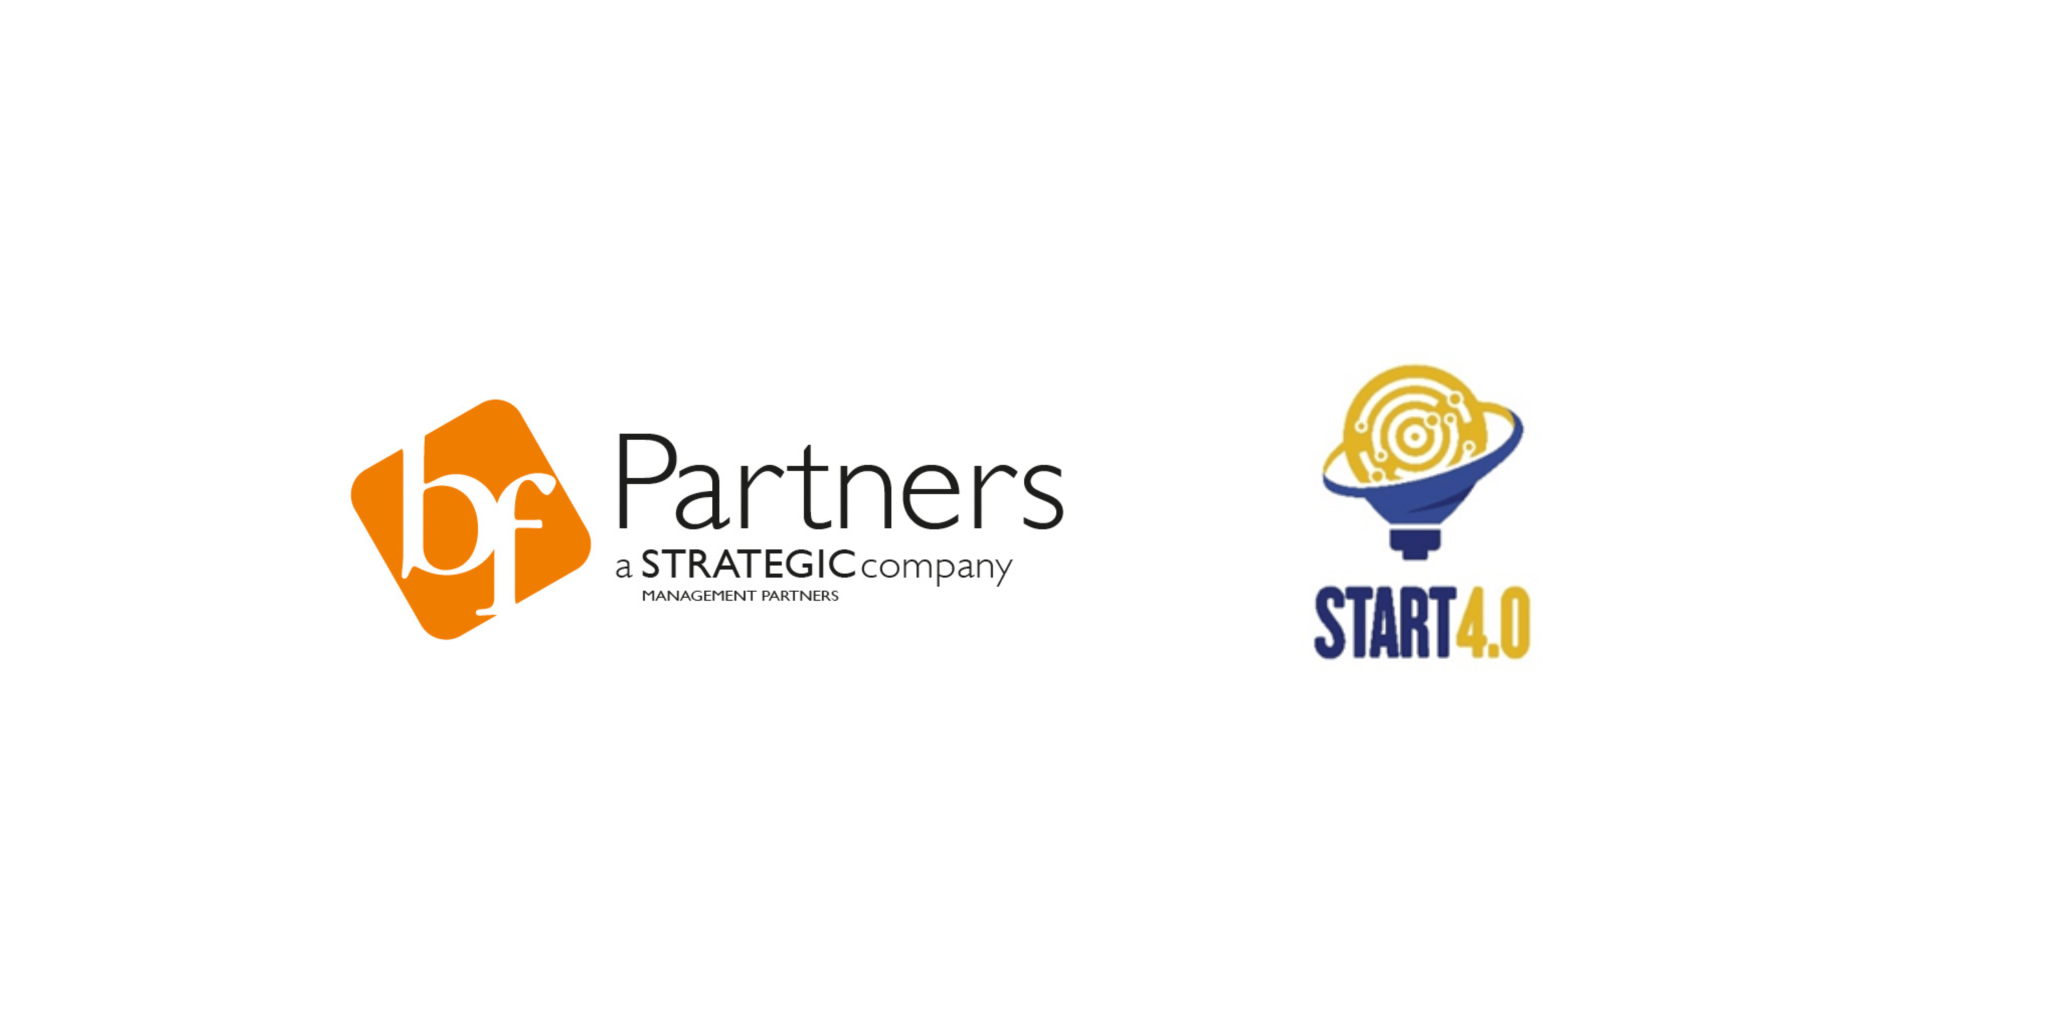 BF Partners, società del Gruppo Strategic, entra in Start 4.0